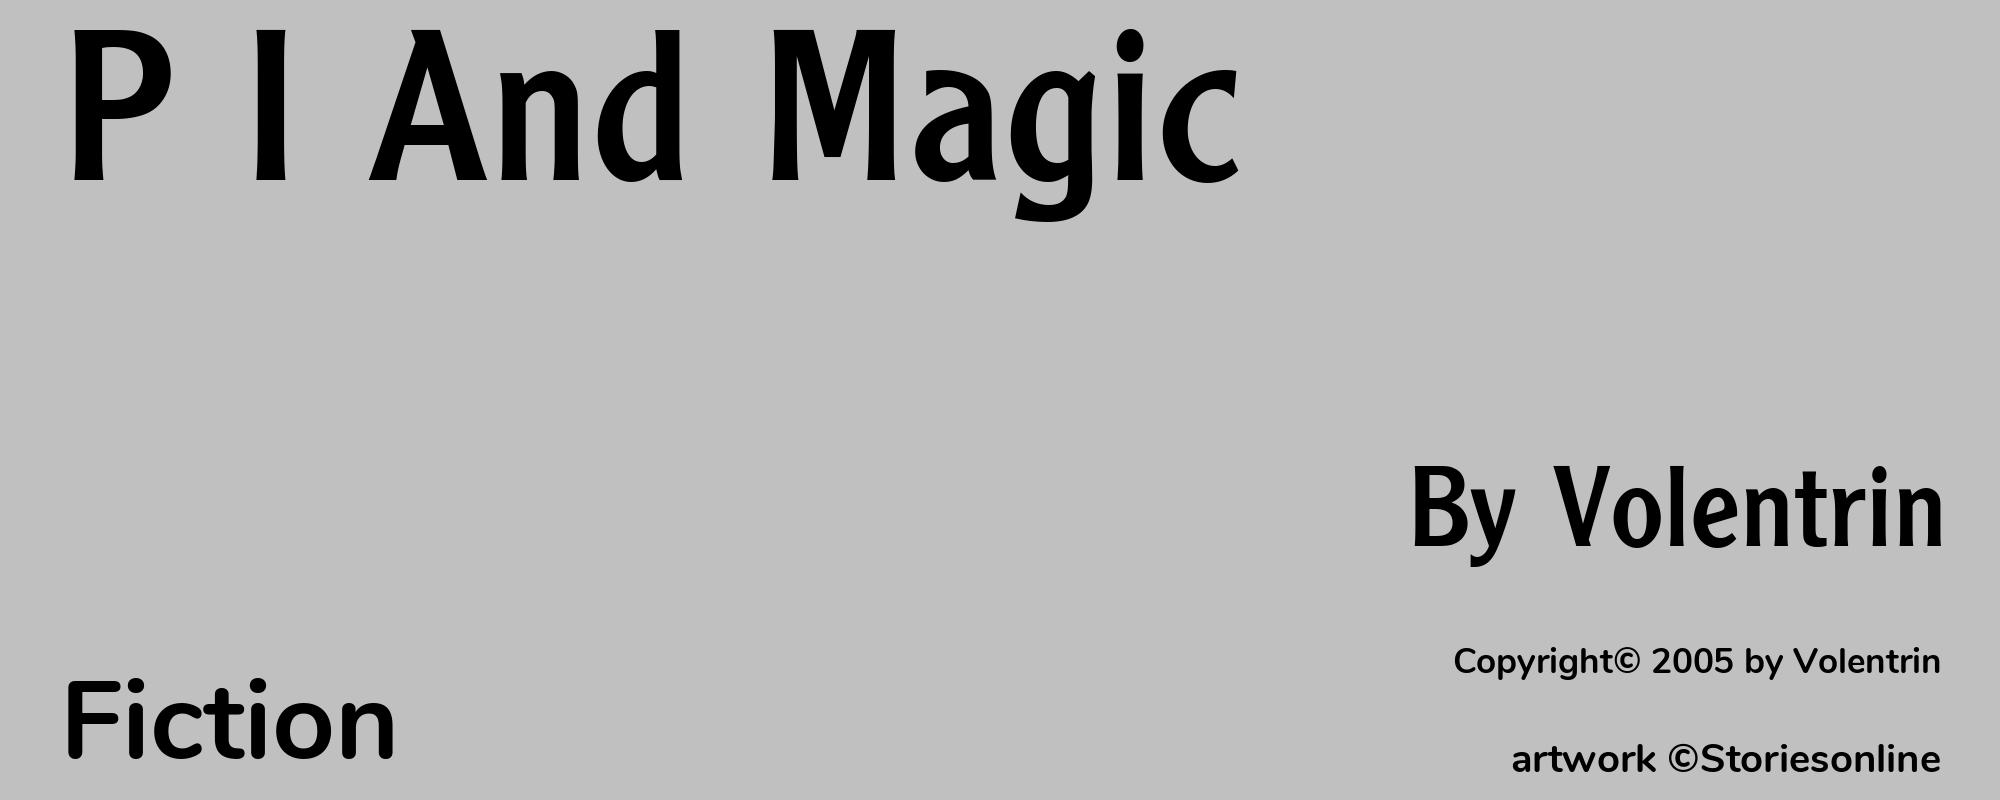 P I And Magic - Cover